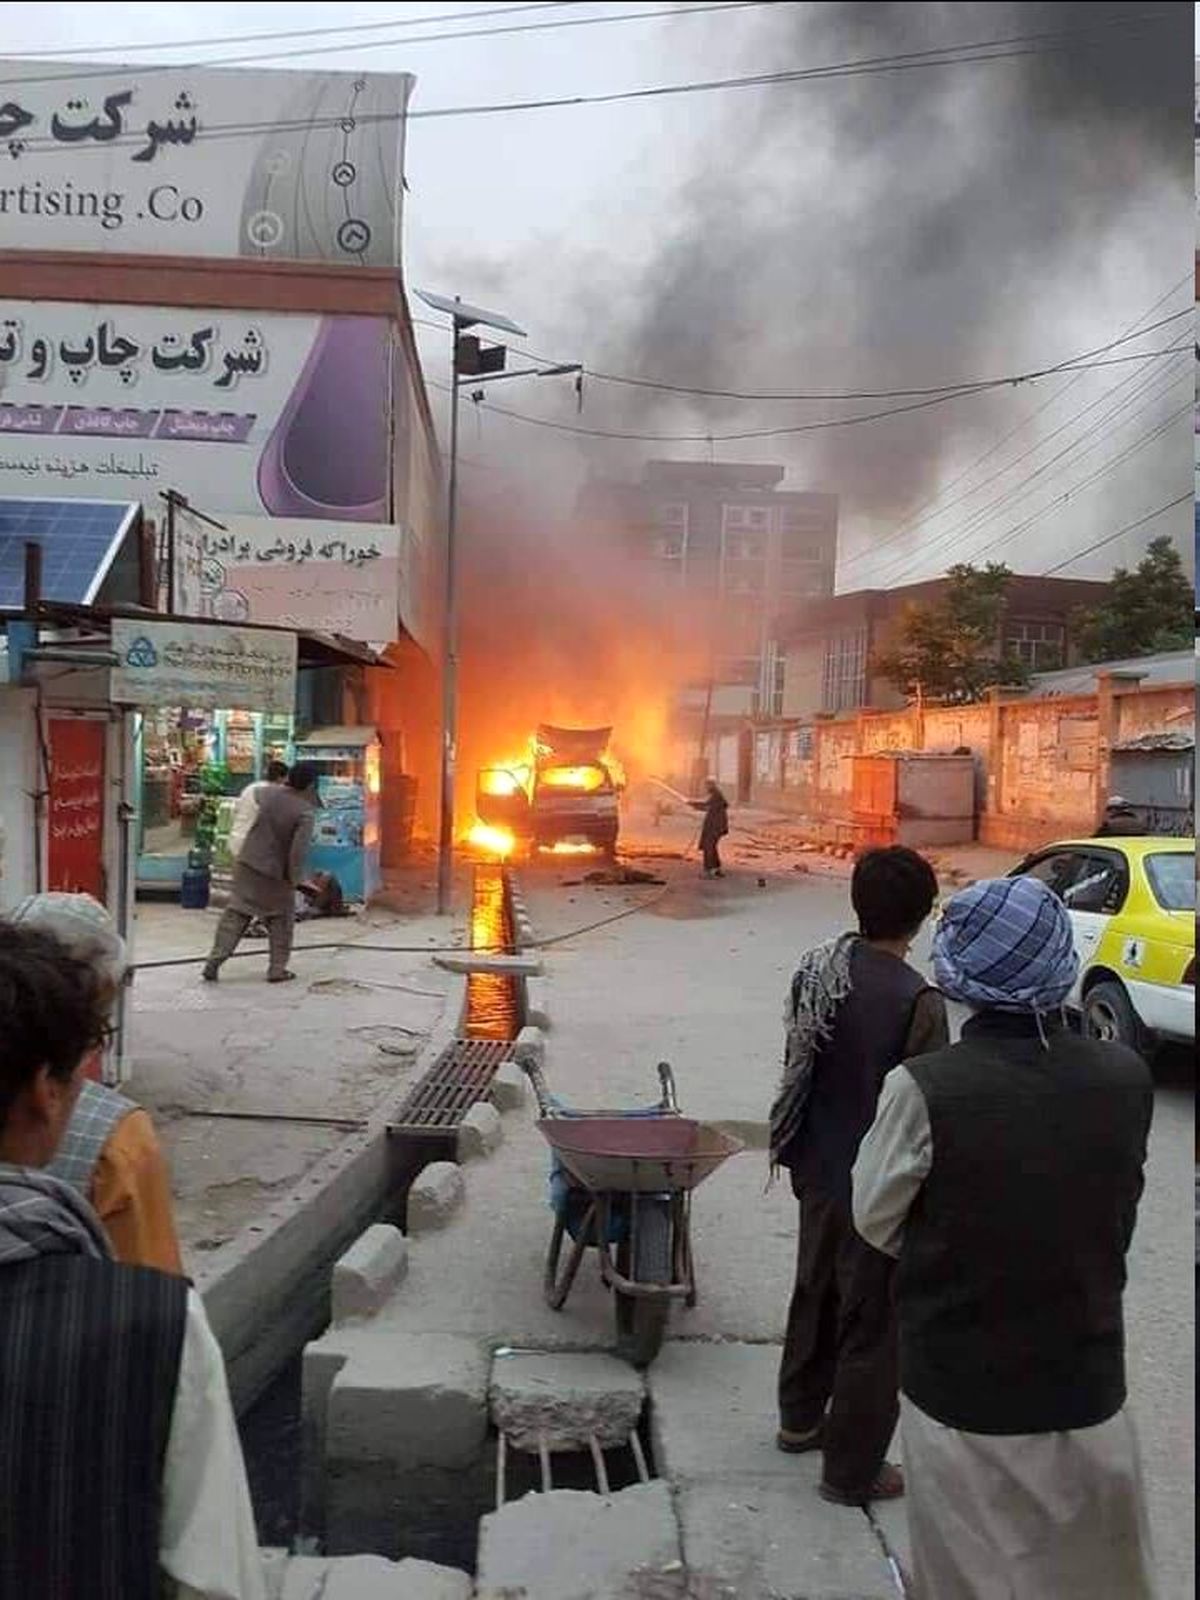 دو انفجار در مزار شریف افغانستان ۹ کشته و ۱۳ زحمی برجای گذاشت/ ویدئو